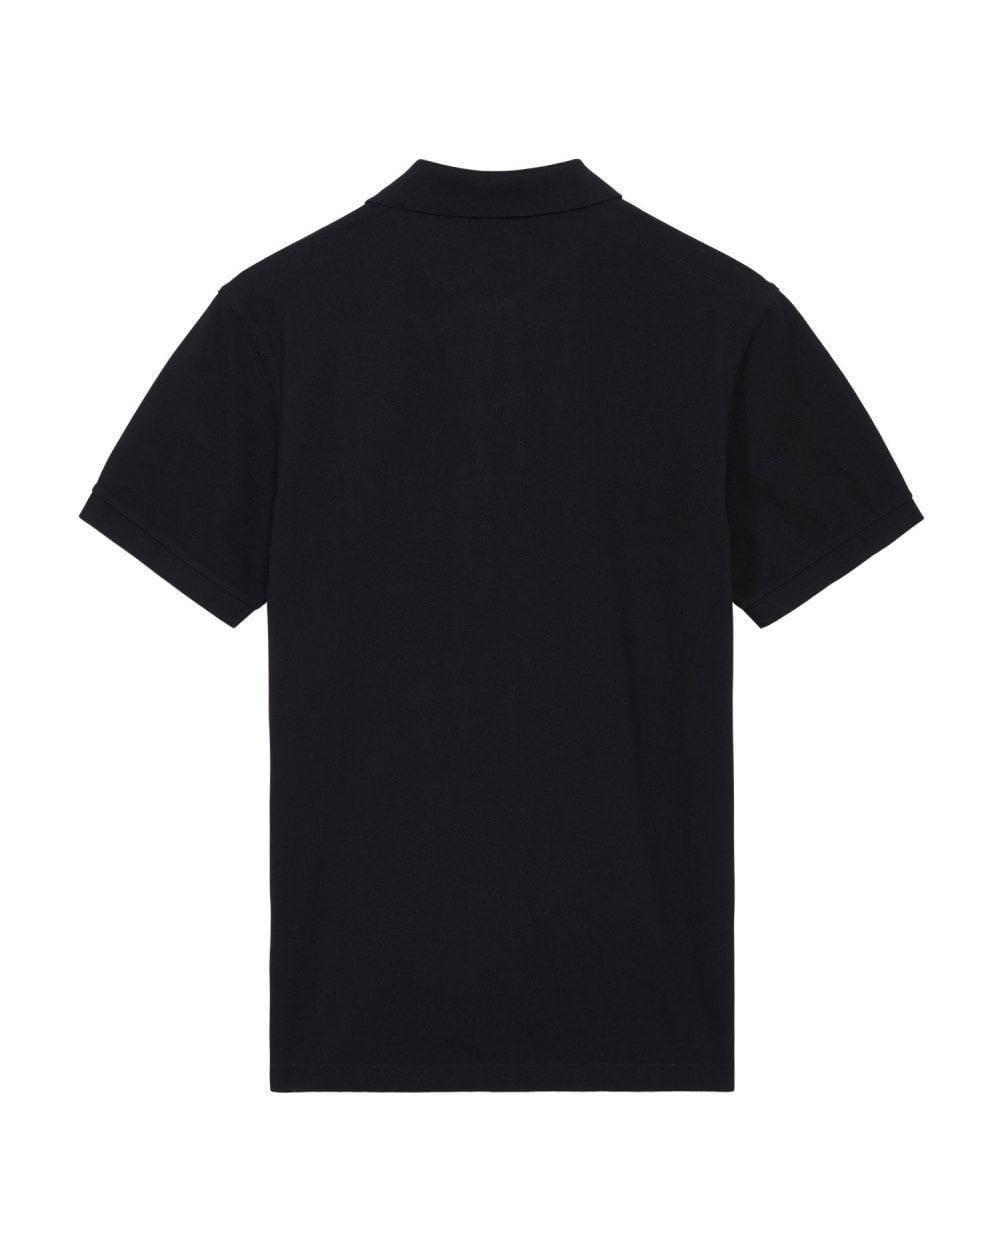 Gant - Black Original Regular Fit Pique Polo Shirt